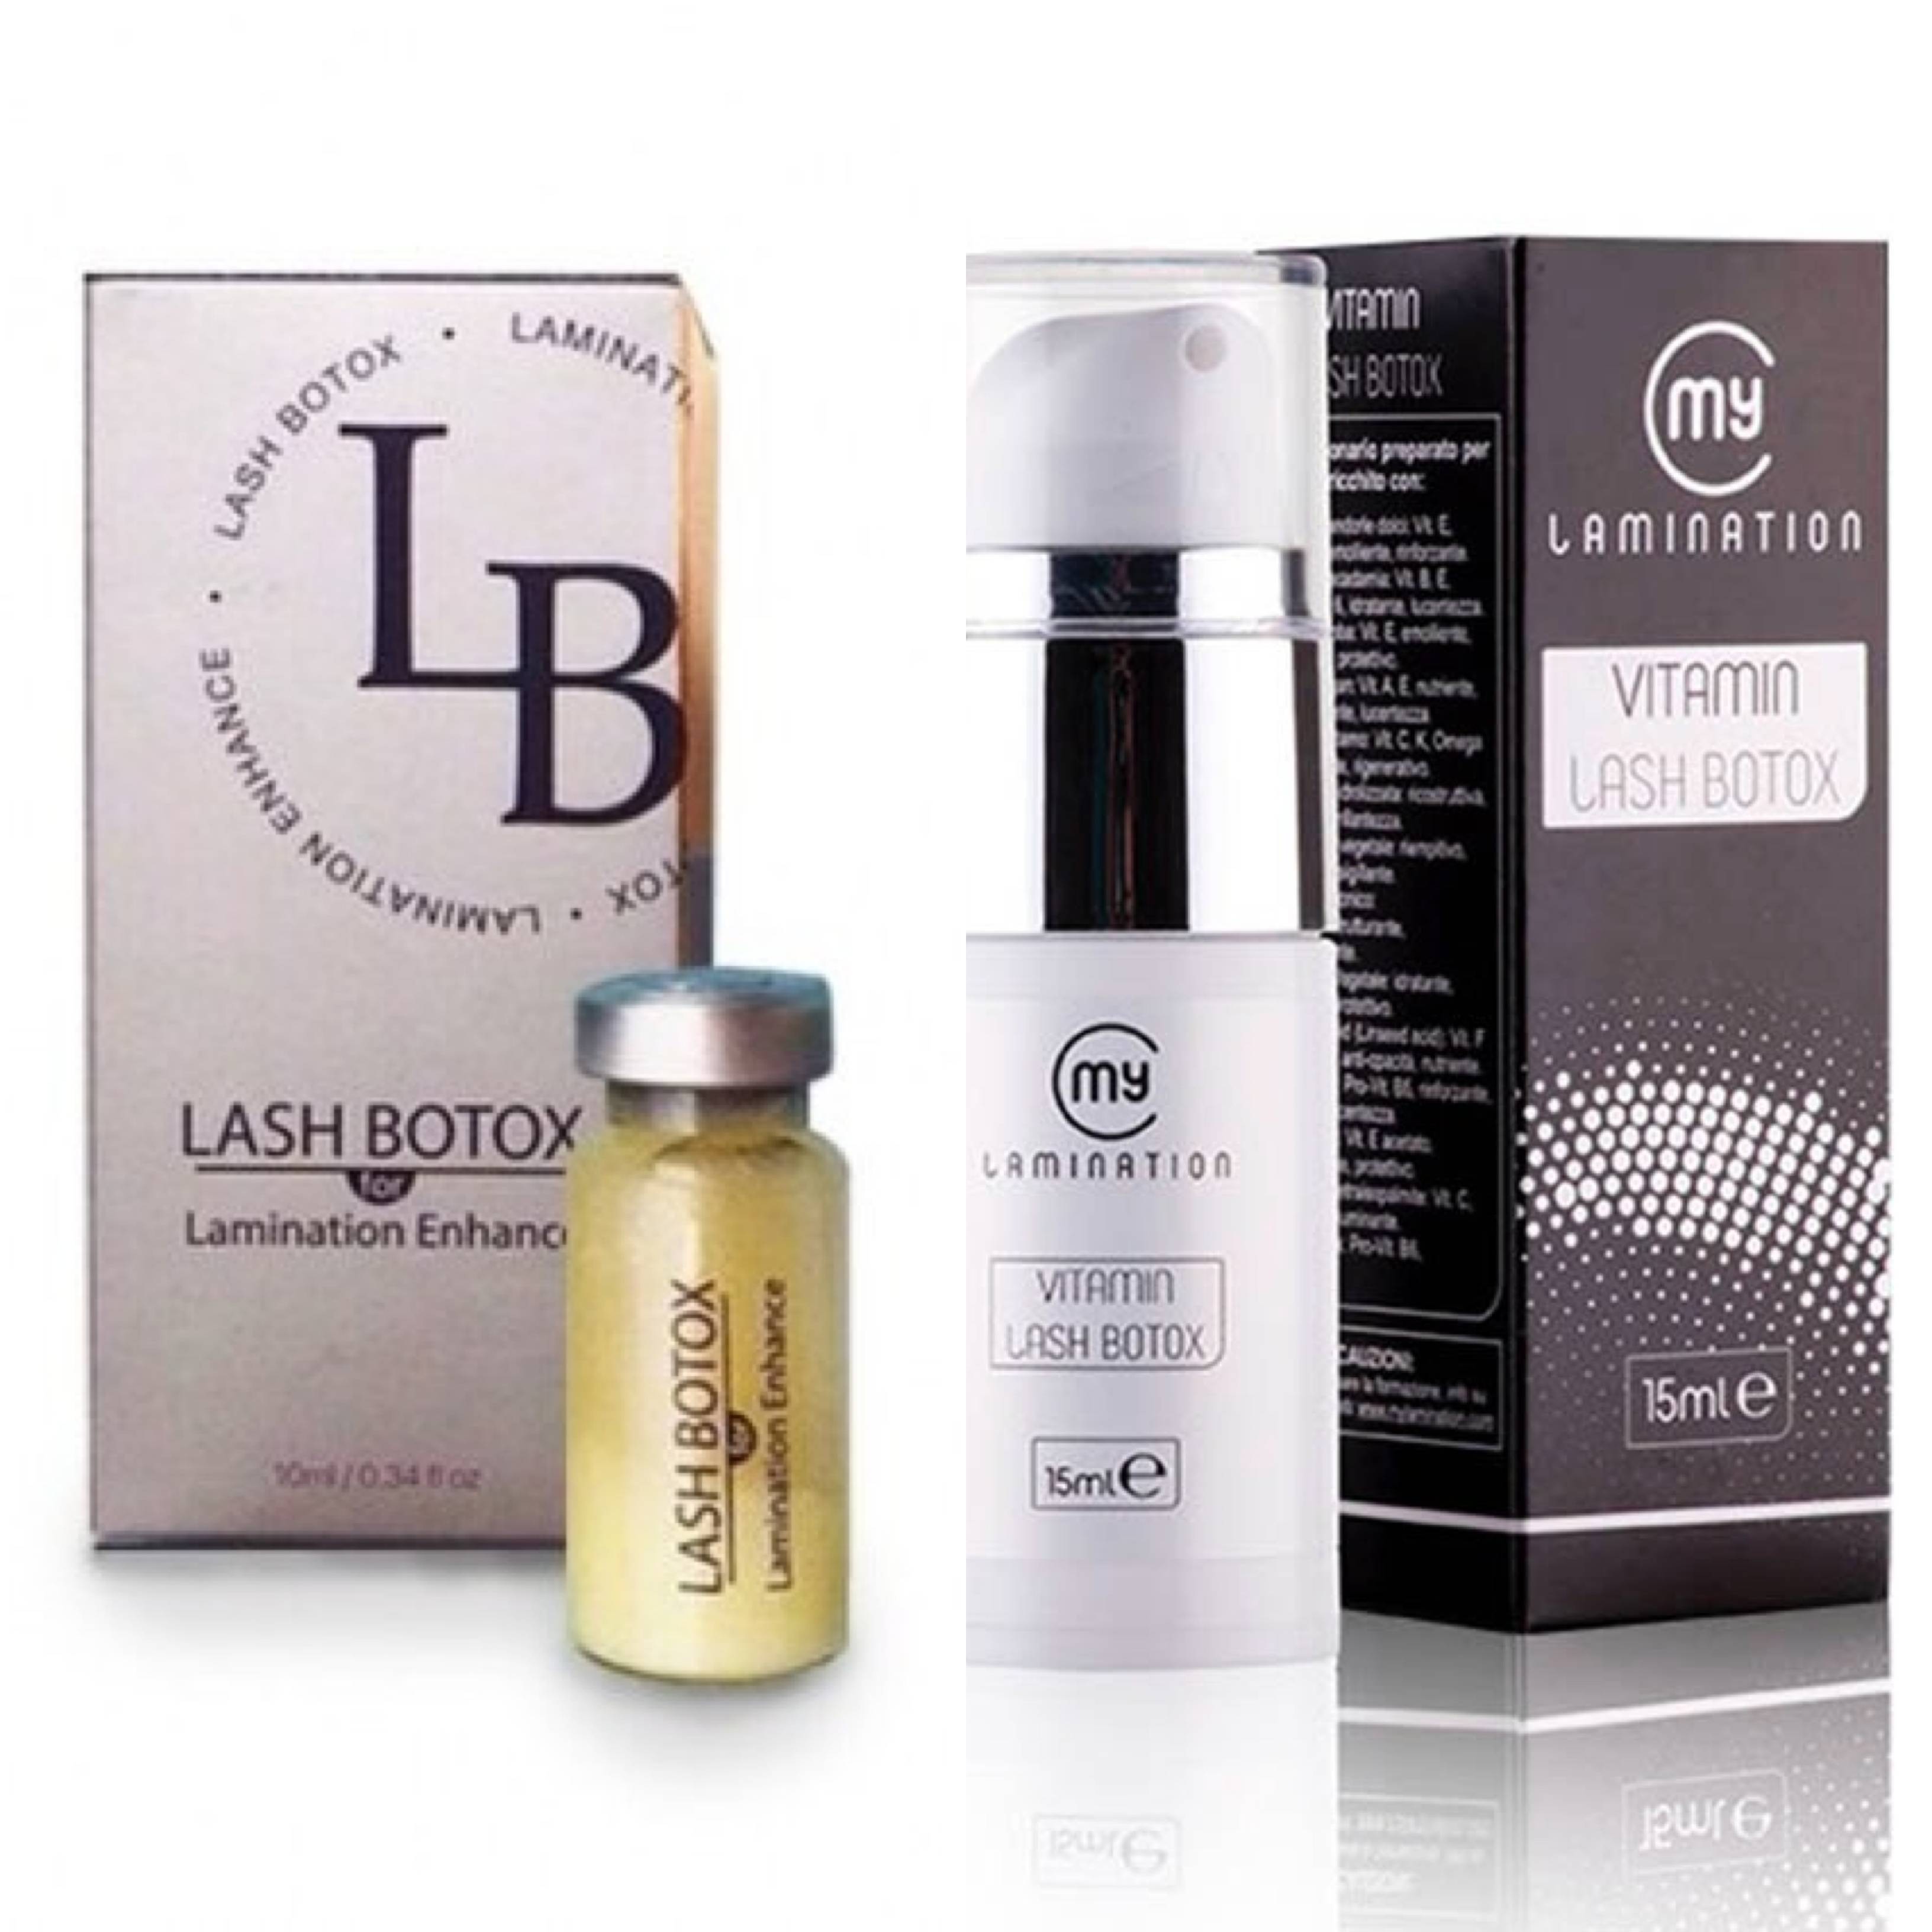 Lash botox для ресниц: преимущества и особенности ламинирования